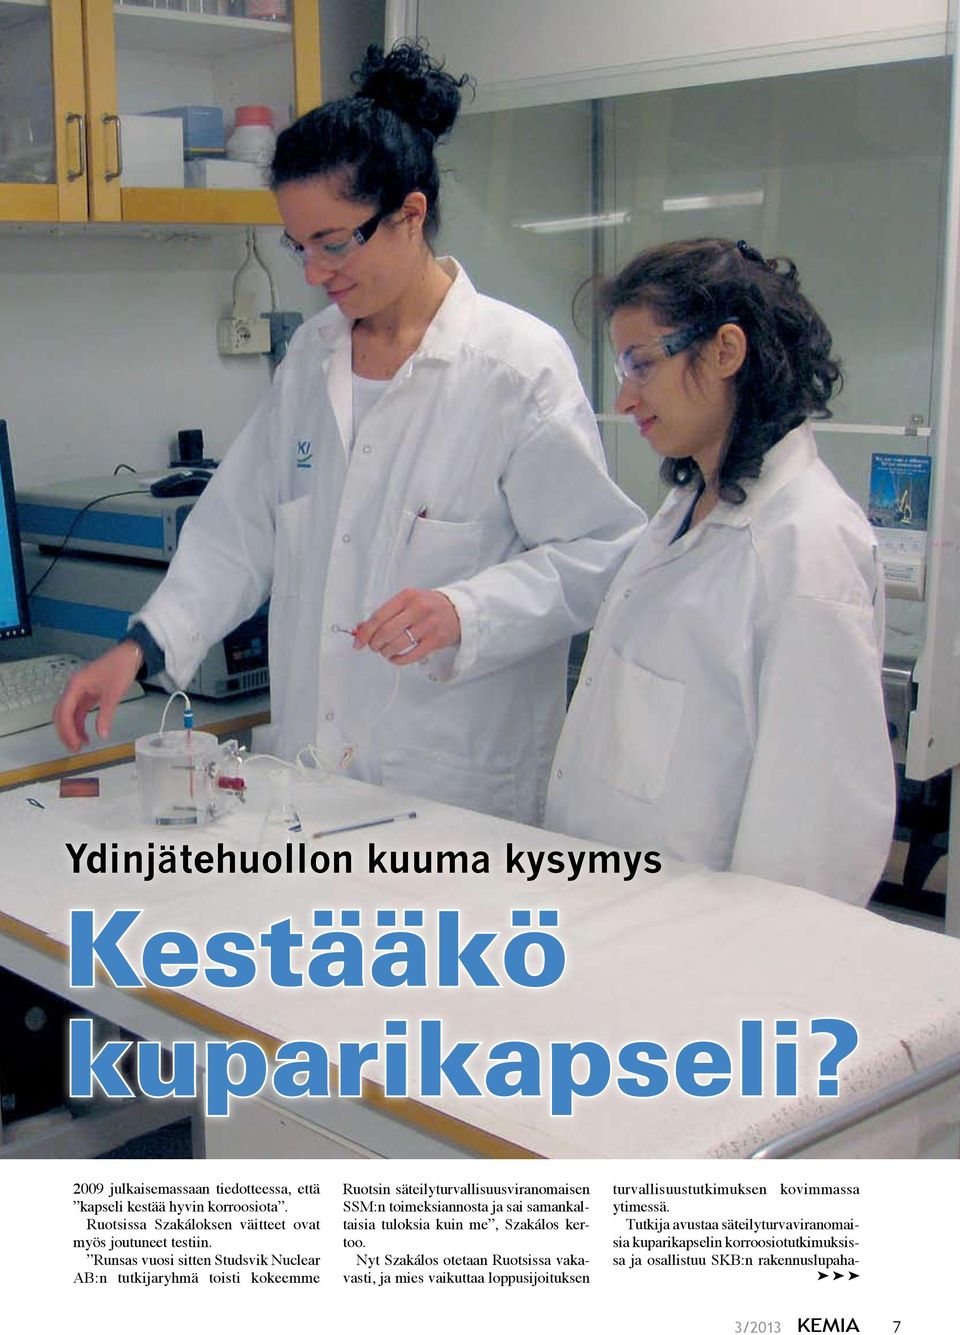 Runsas vuosi sitten Studsvik Nuclear AB:n tutkijaryhmä toisti kokeemme Ruotsin säteilyturvallisuusviranomaisen SSM:n toimeksiannosta ja sai samankaltaisia